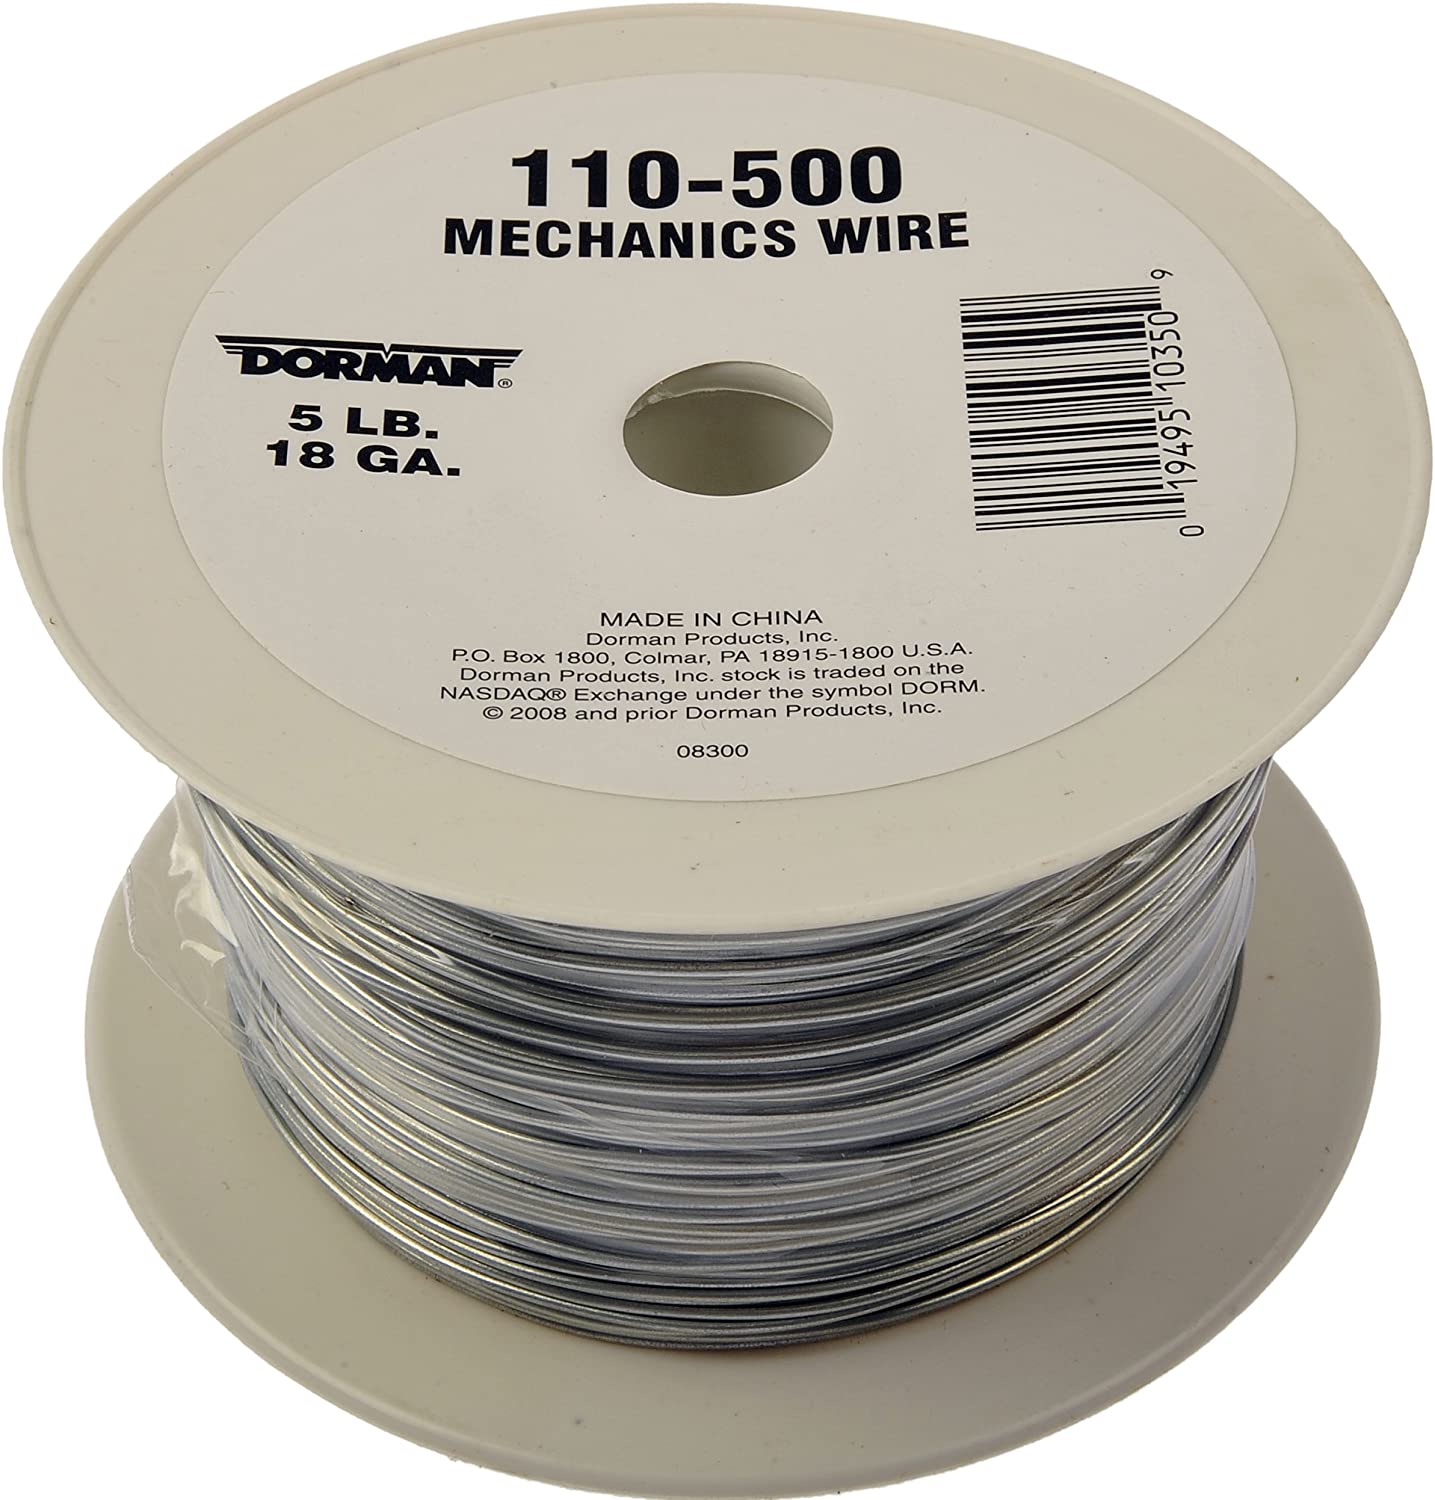 Dorman 110-500 Spool Mechanics Wire - 18 Gauge 5 Pound, 830 Feet